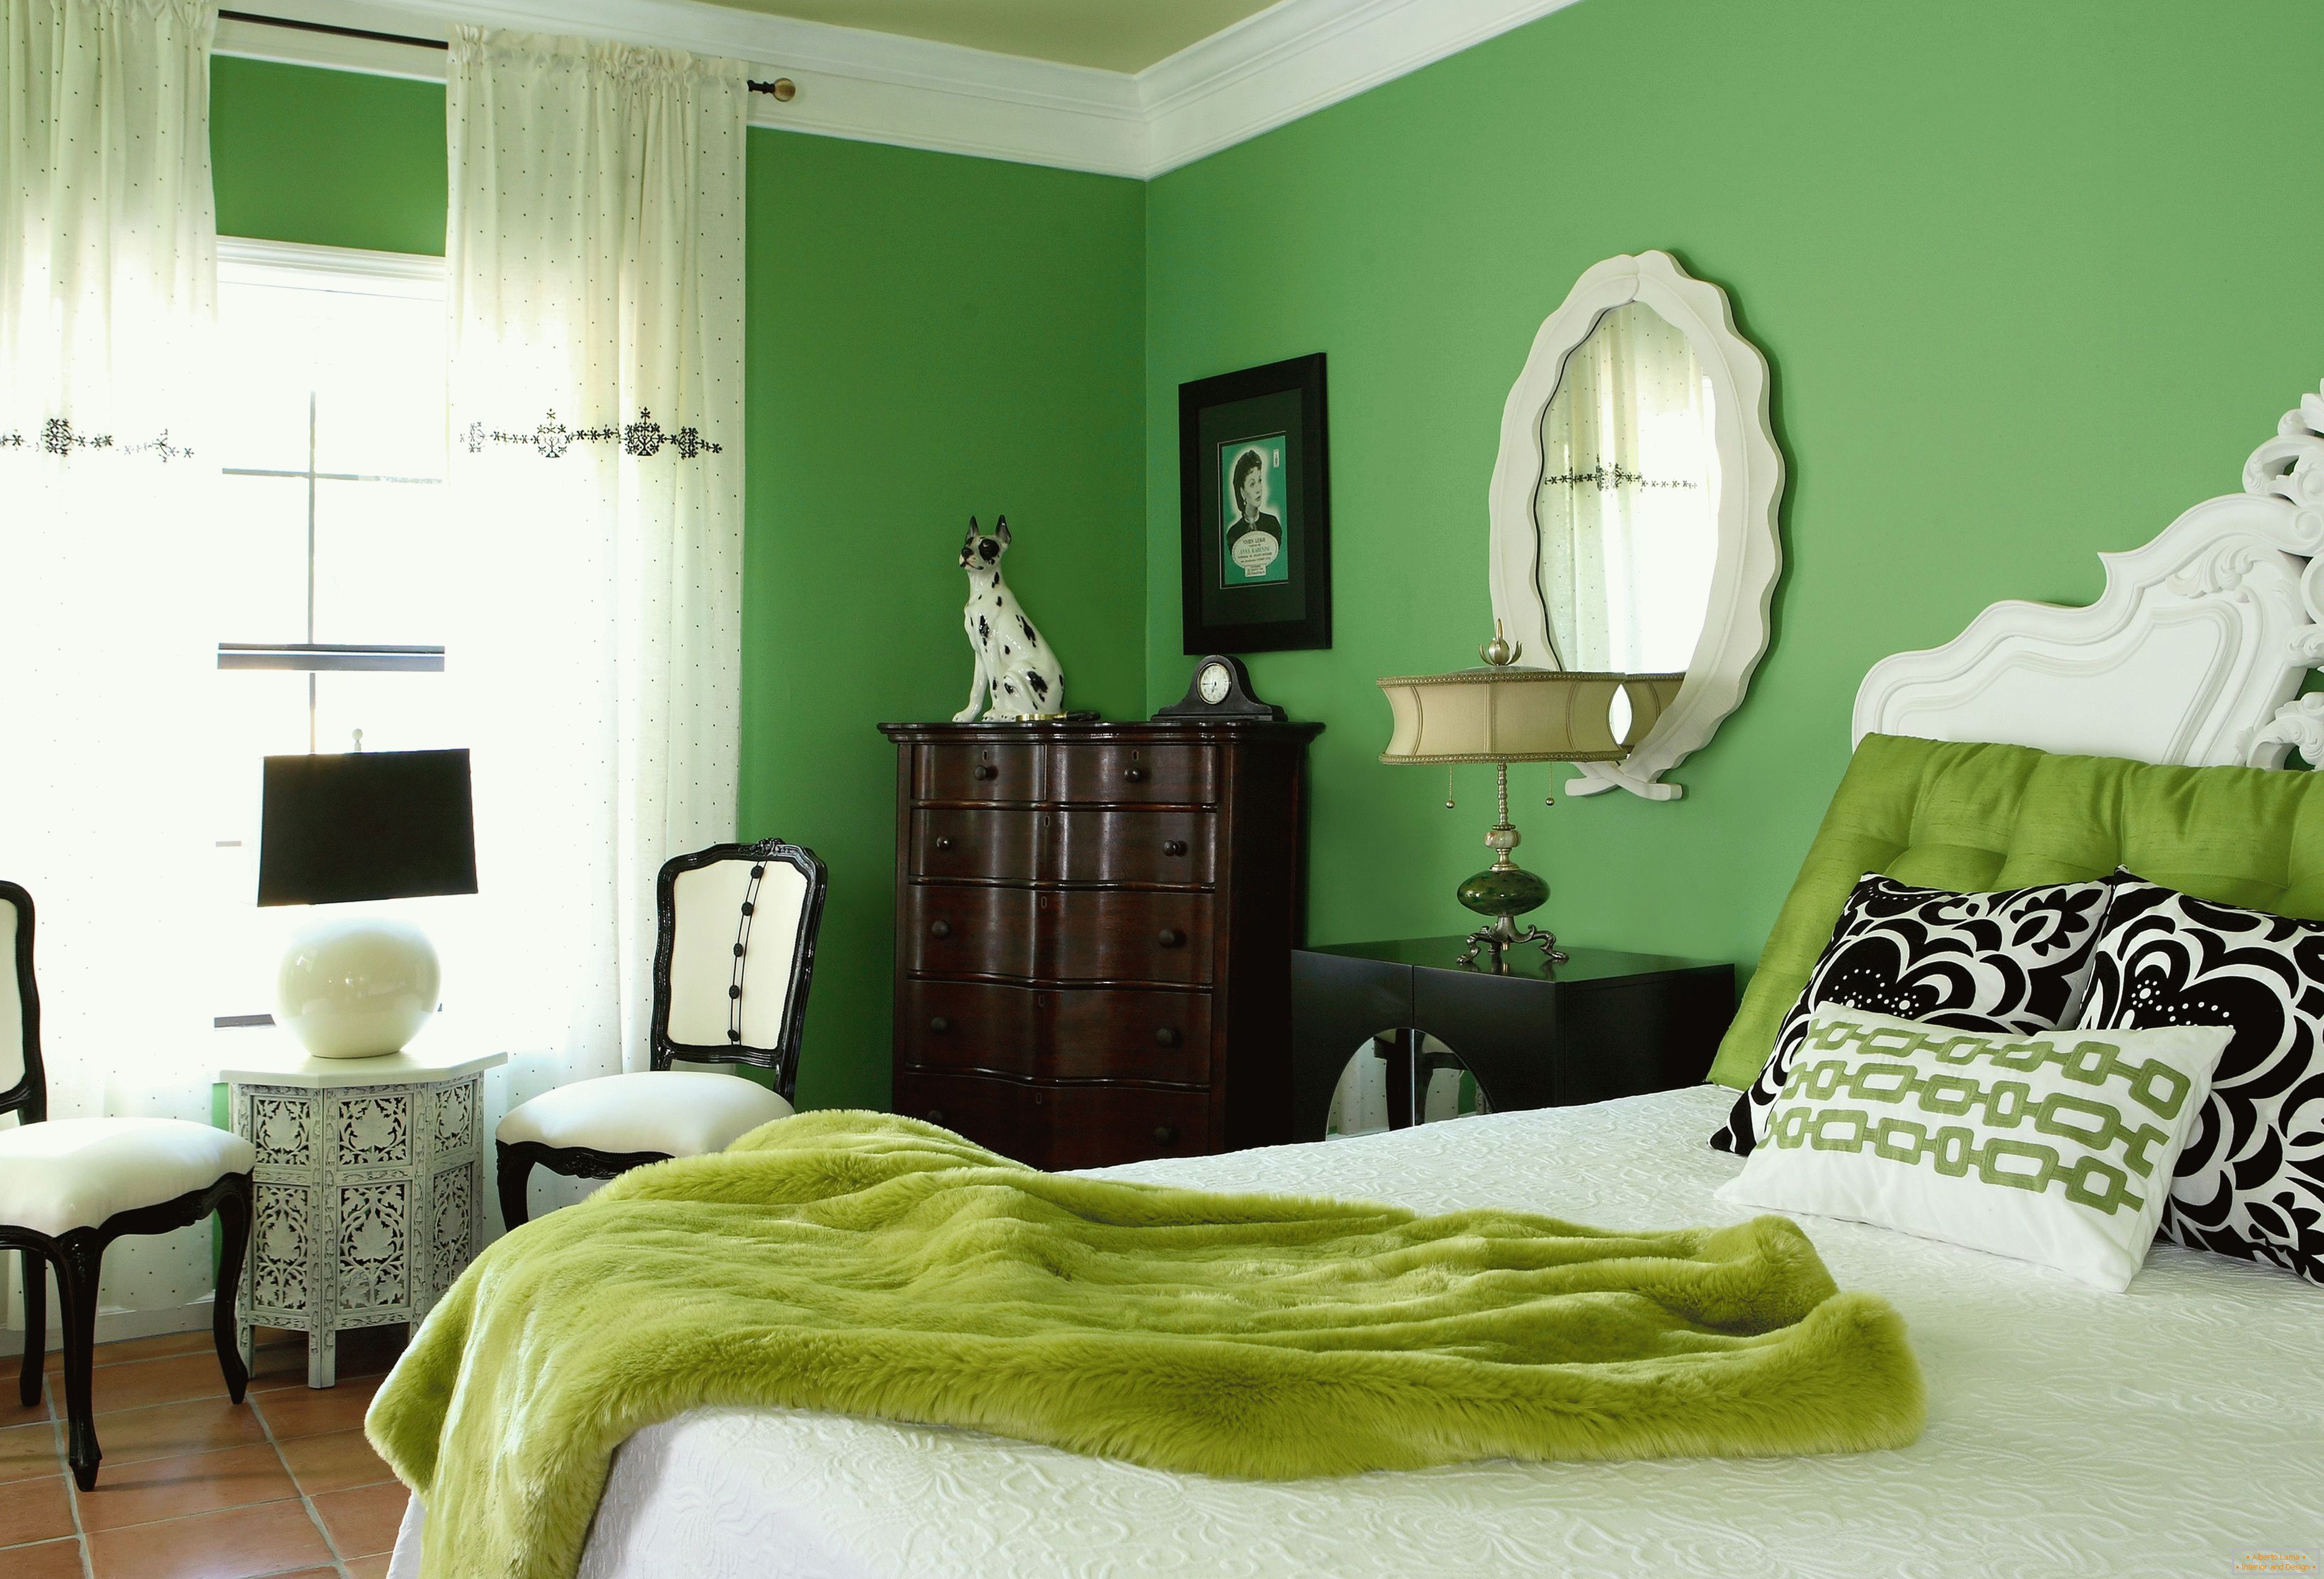 Dormitorio en colores verdes